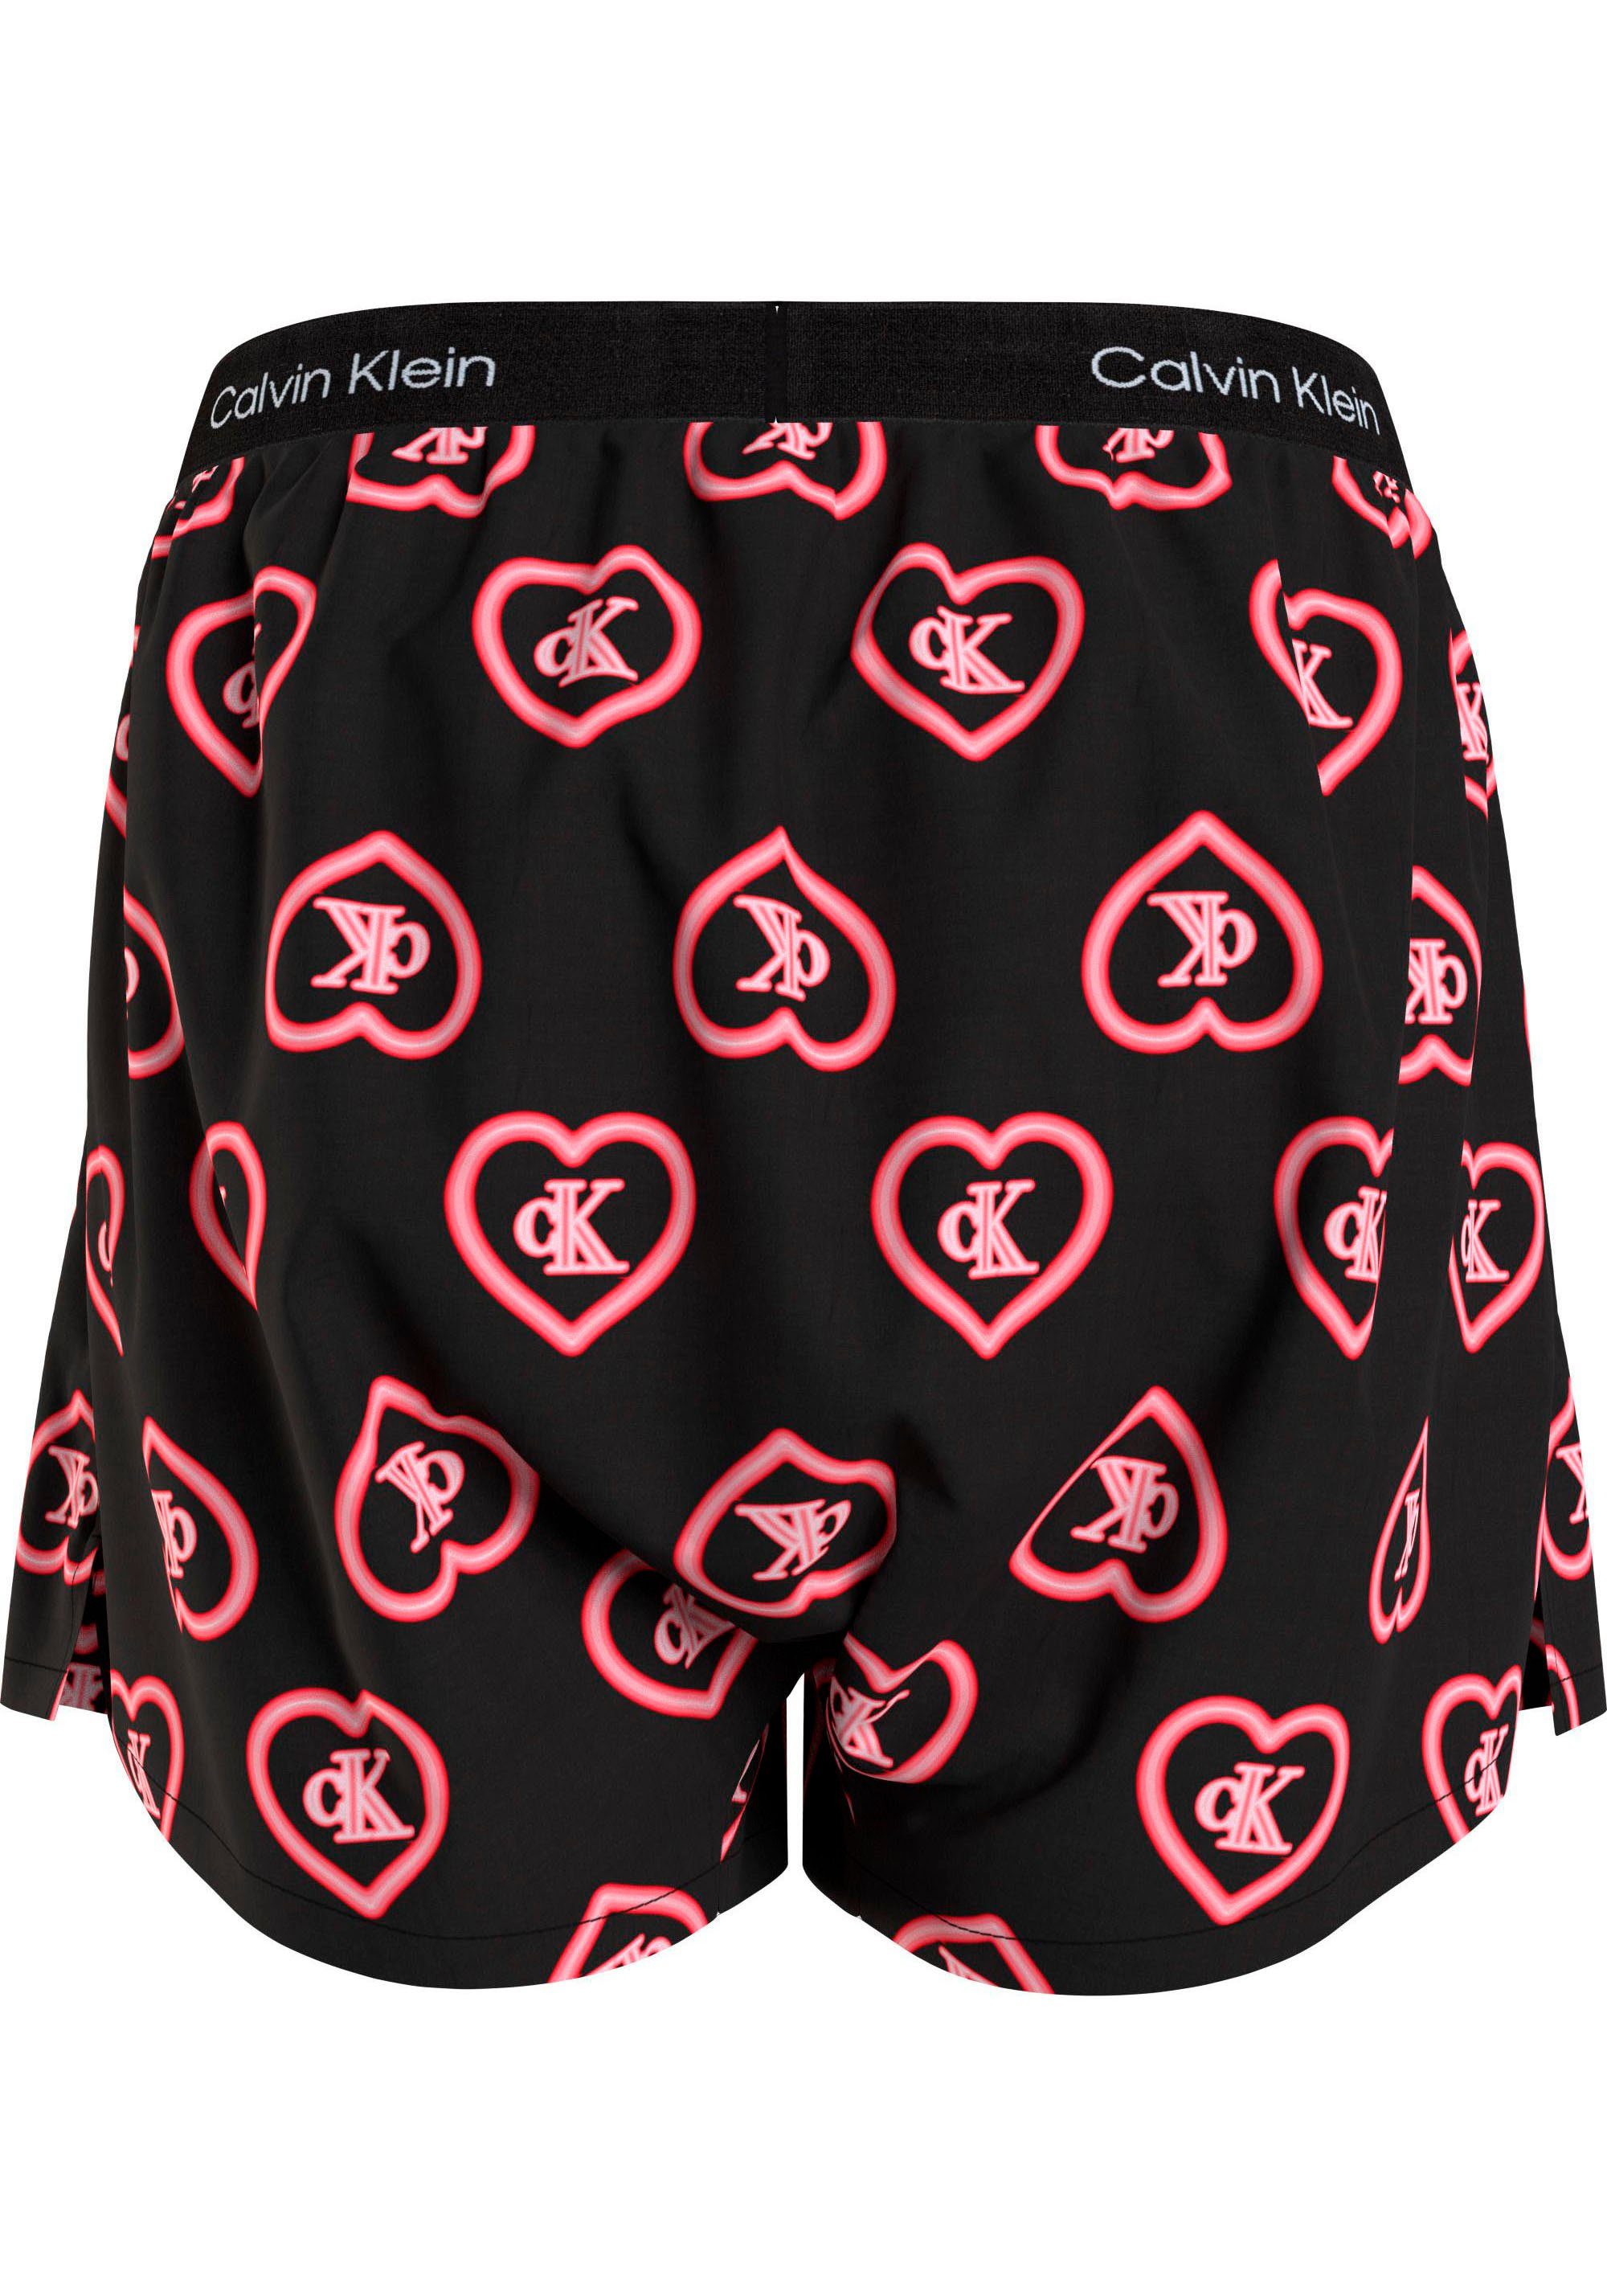 Calvin mit TRADITIONAL Pyjamashorts Print Underwear Klein BOXER